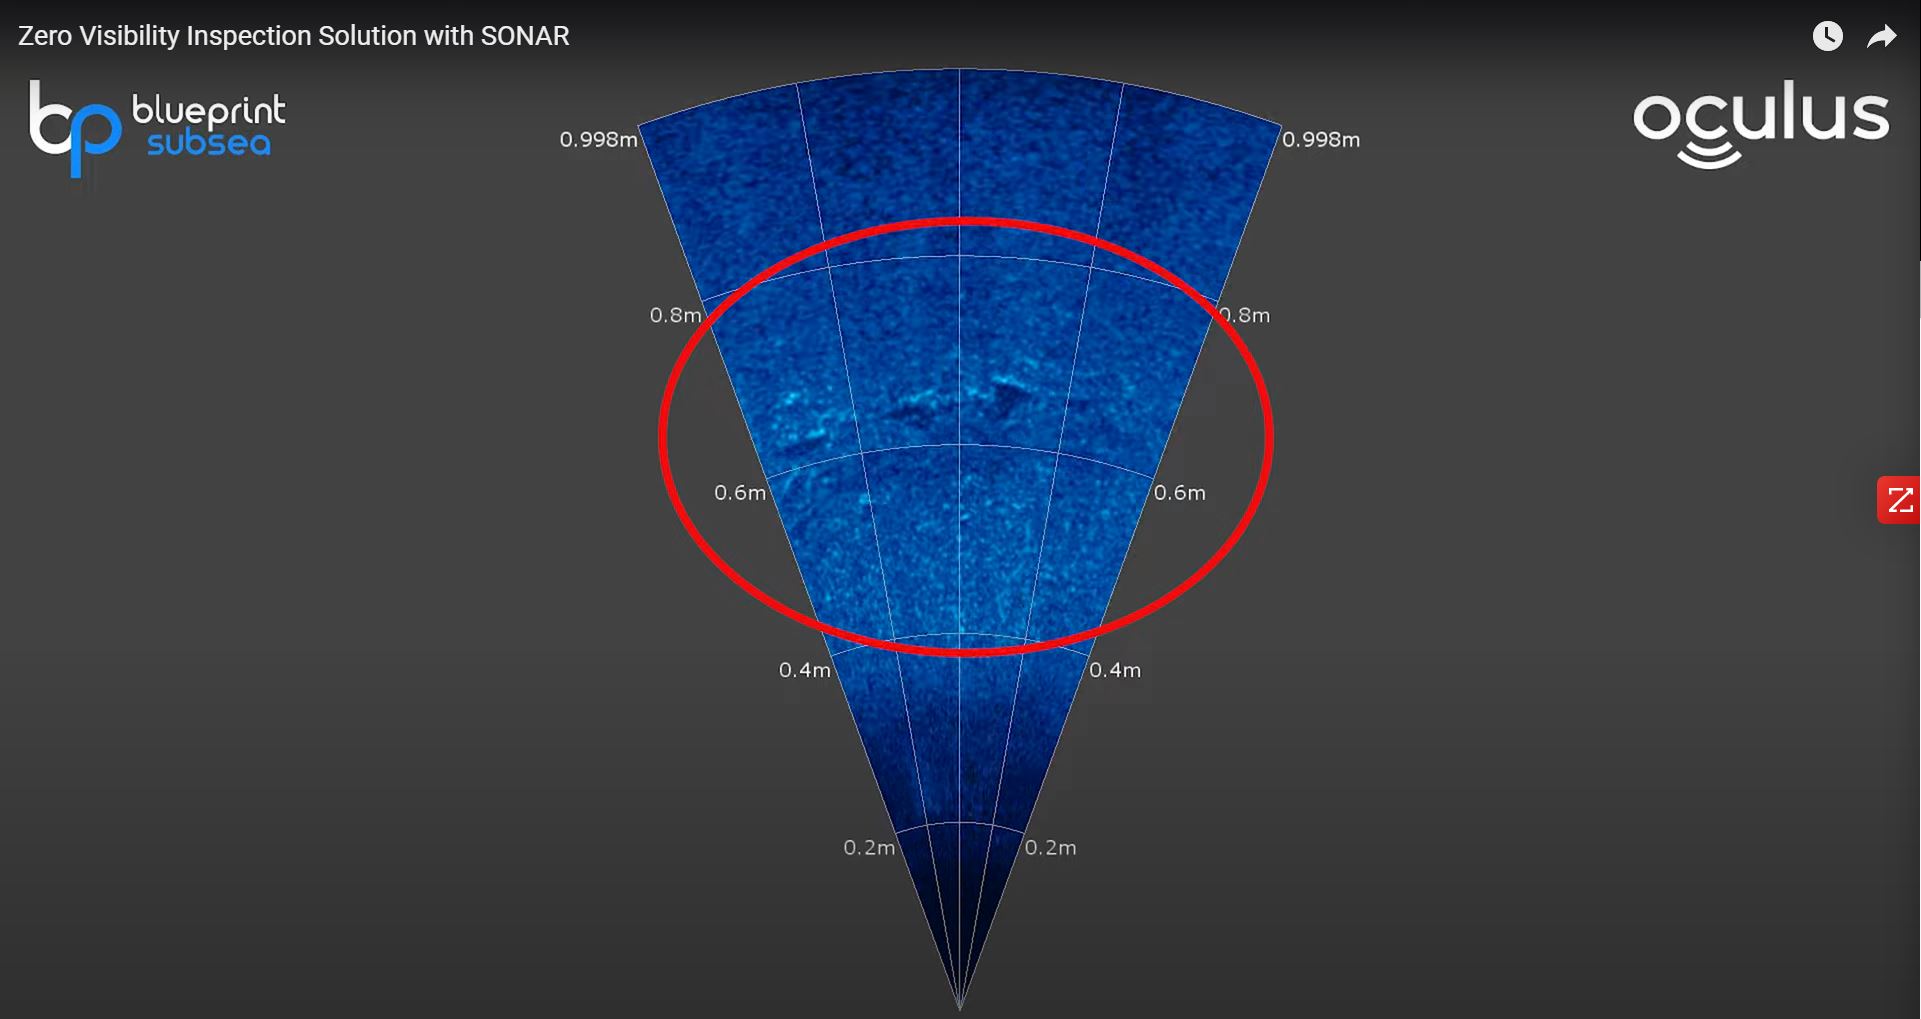 El sonar de imágenes SS5 identifica y mide pozos